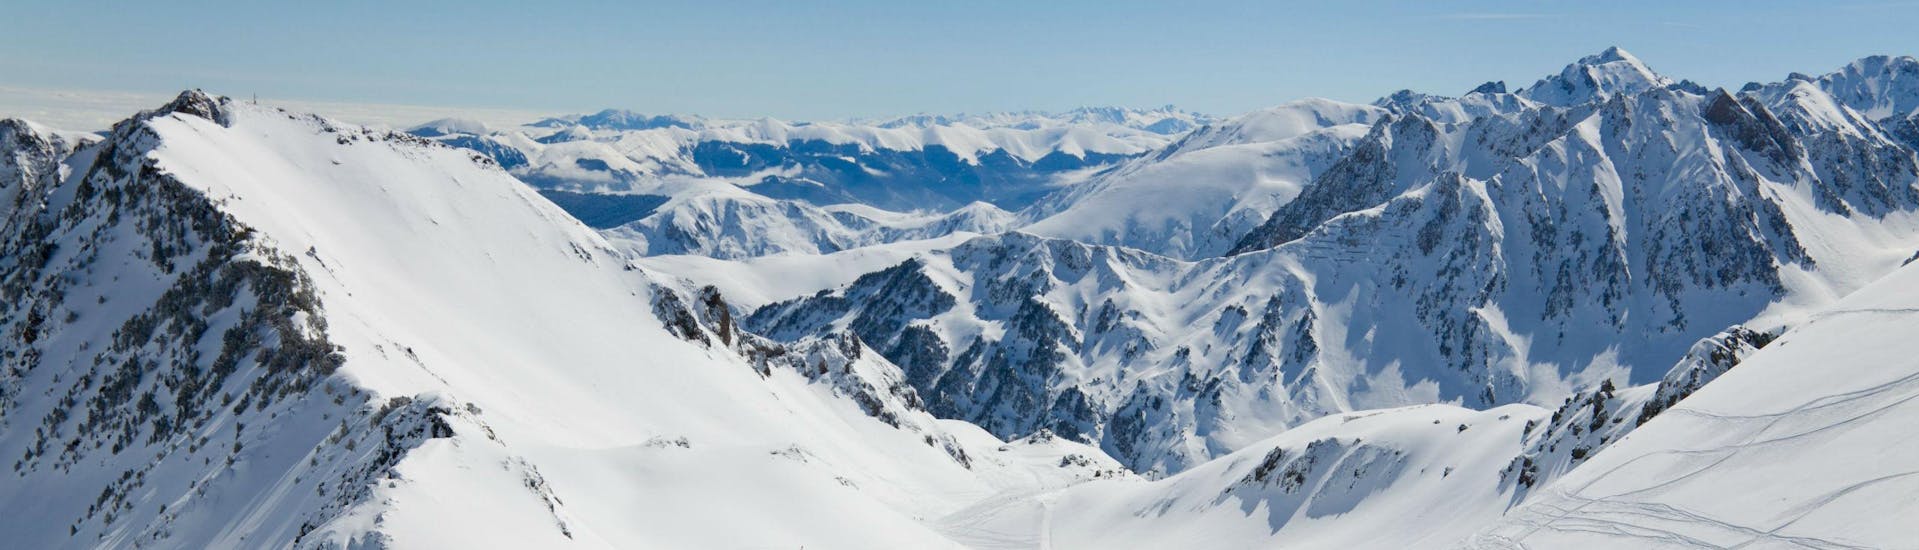 Un snowboardeur admire la vue magnifique sur les Pyrénées enneigées depuis l'une des pistes de La Mongie - Village, où les écoles de ski locales proposent un vaste choix de cours de ski.